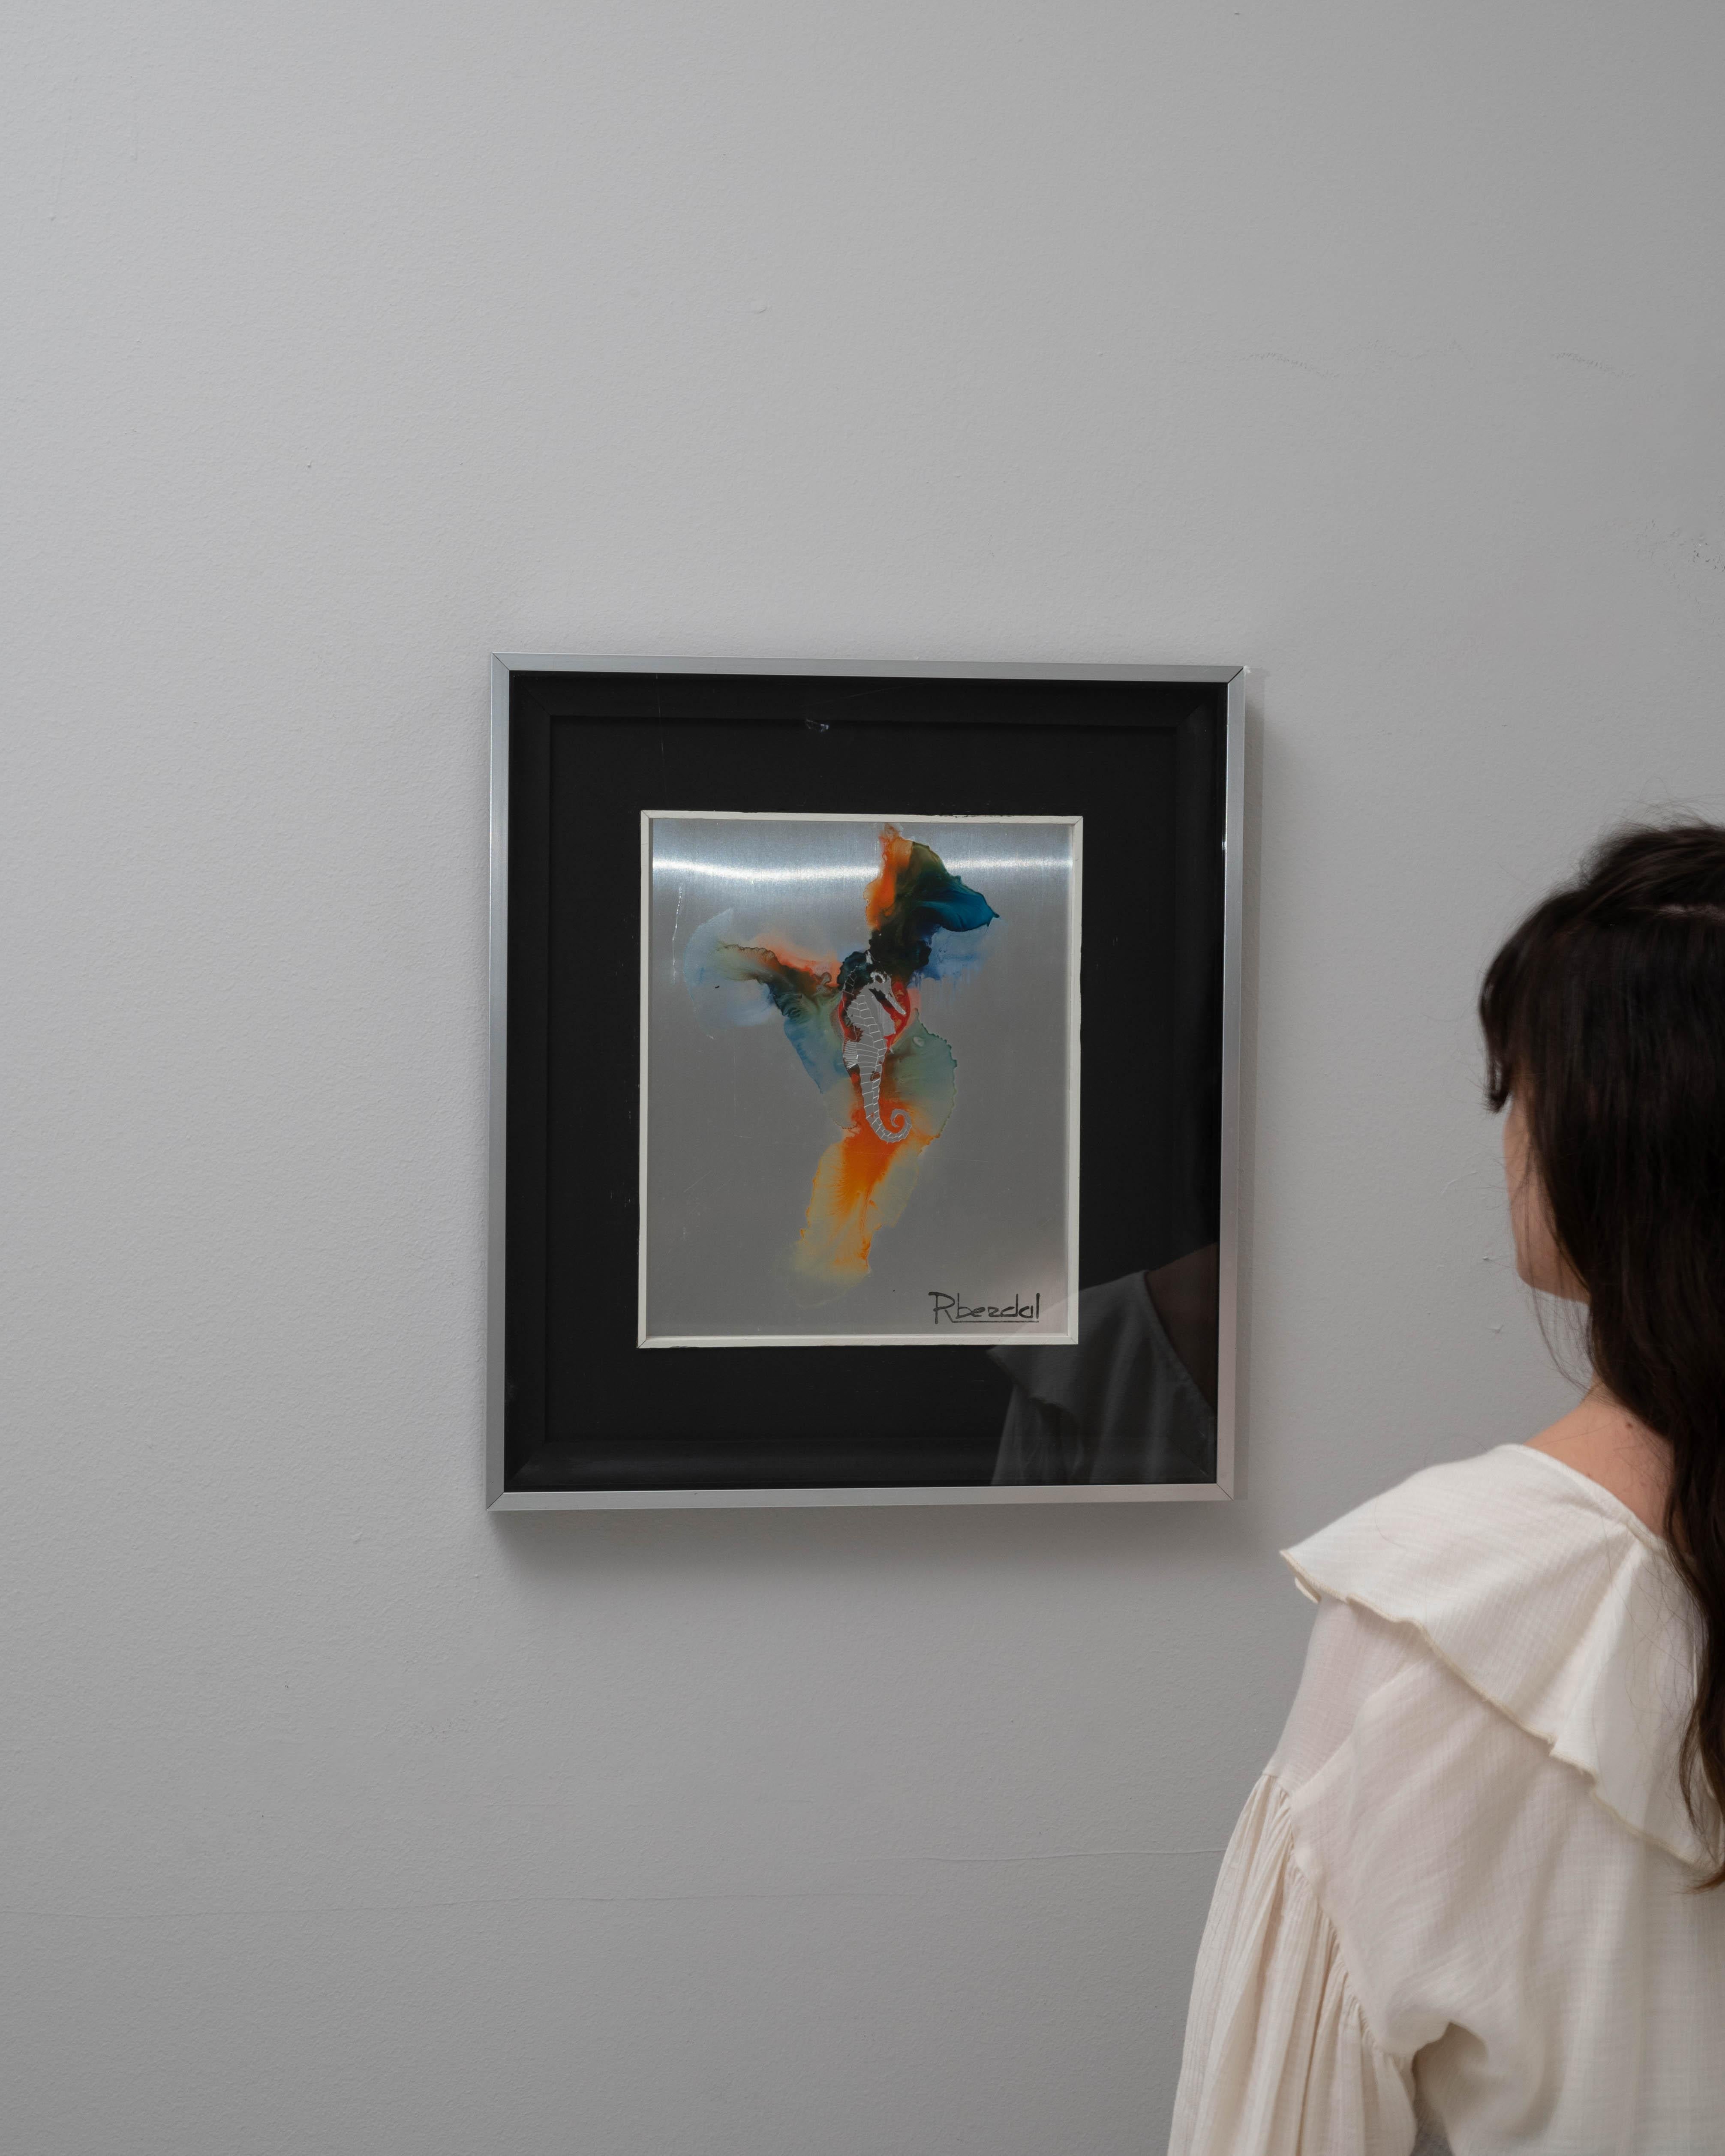 Apportez une touche d'art abstrait à votre espace avec cette captivante peinture belge du 20e siècle de René Berdal. Ce chef-d'œuvre encadré allie sans effort un mélange saisissant de couleurs vives à des formes fluides et dynamiques, ce qui en fait